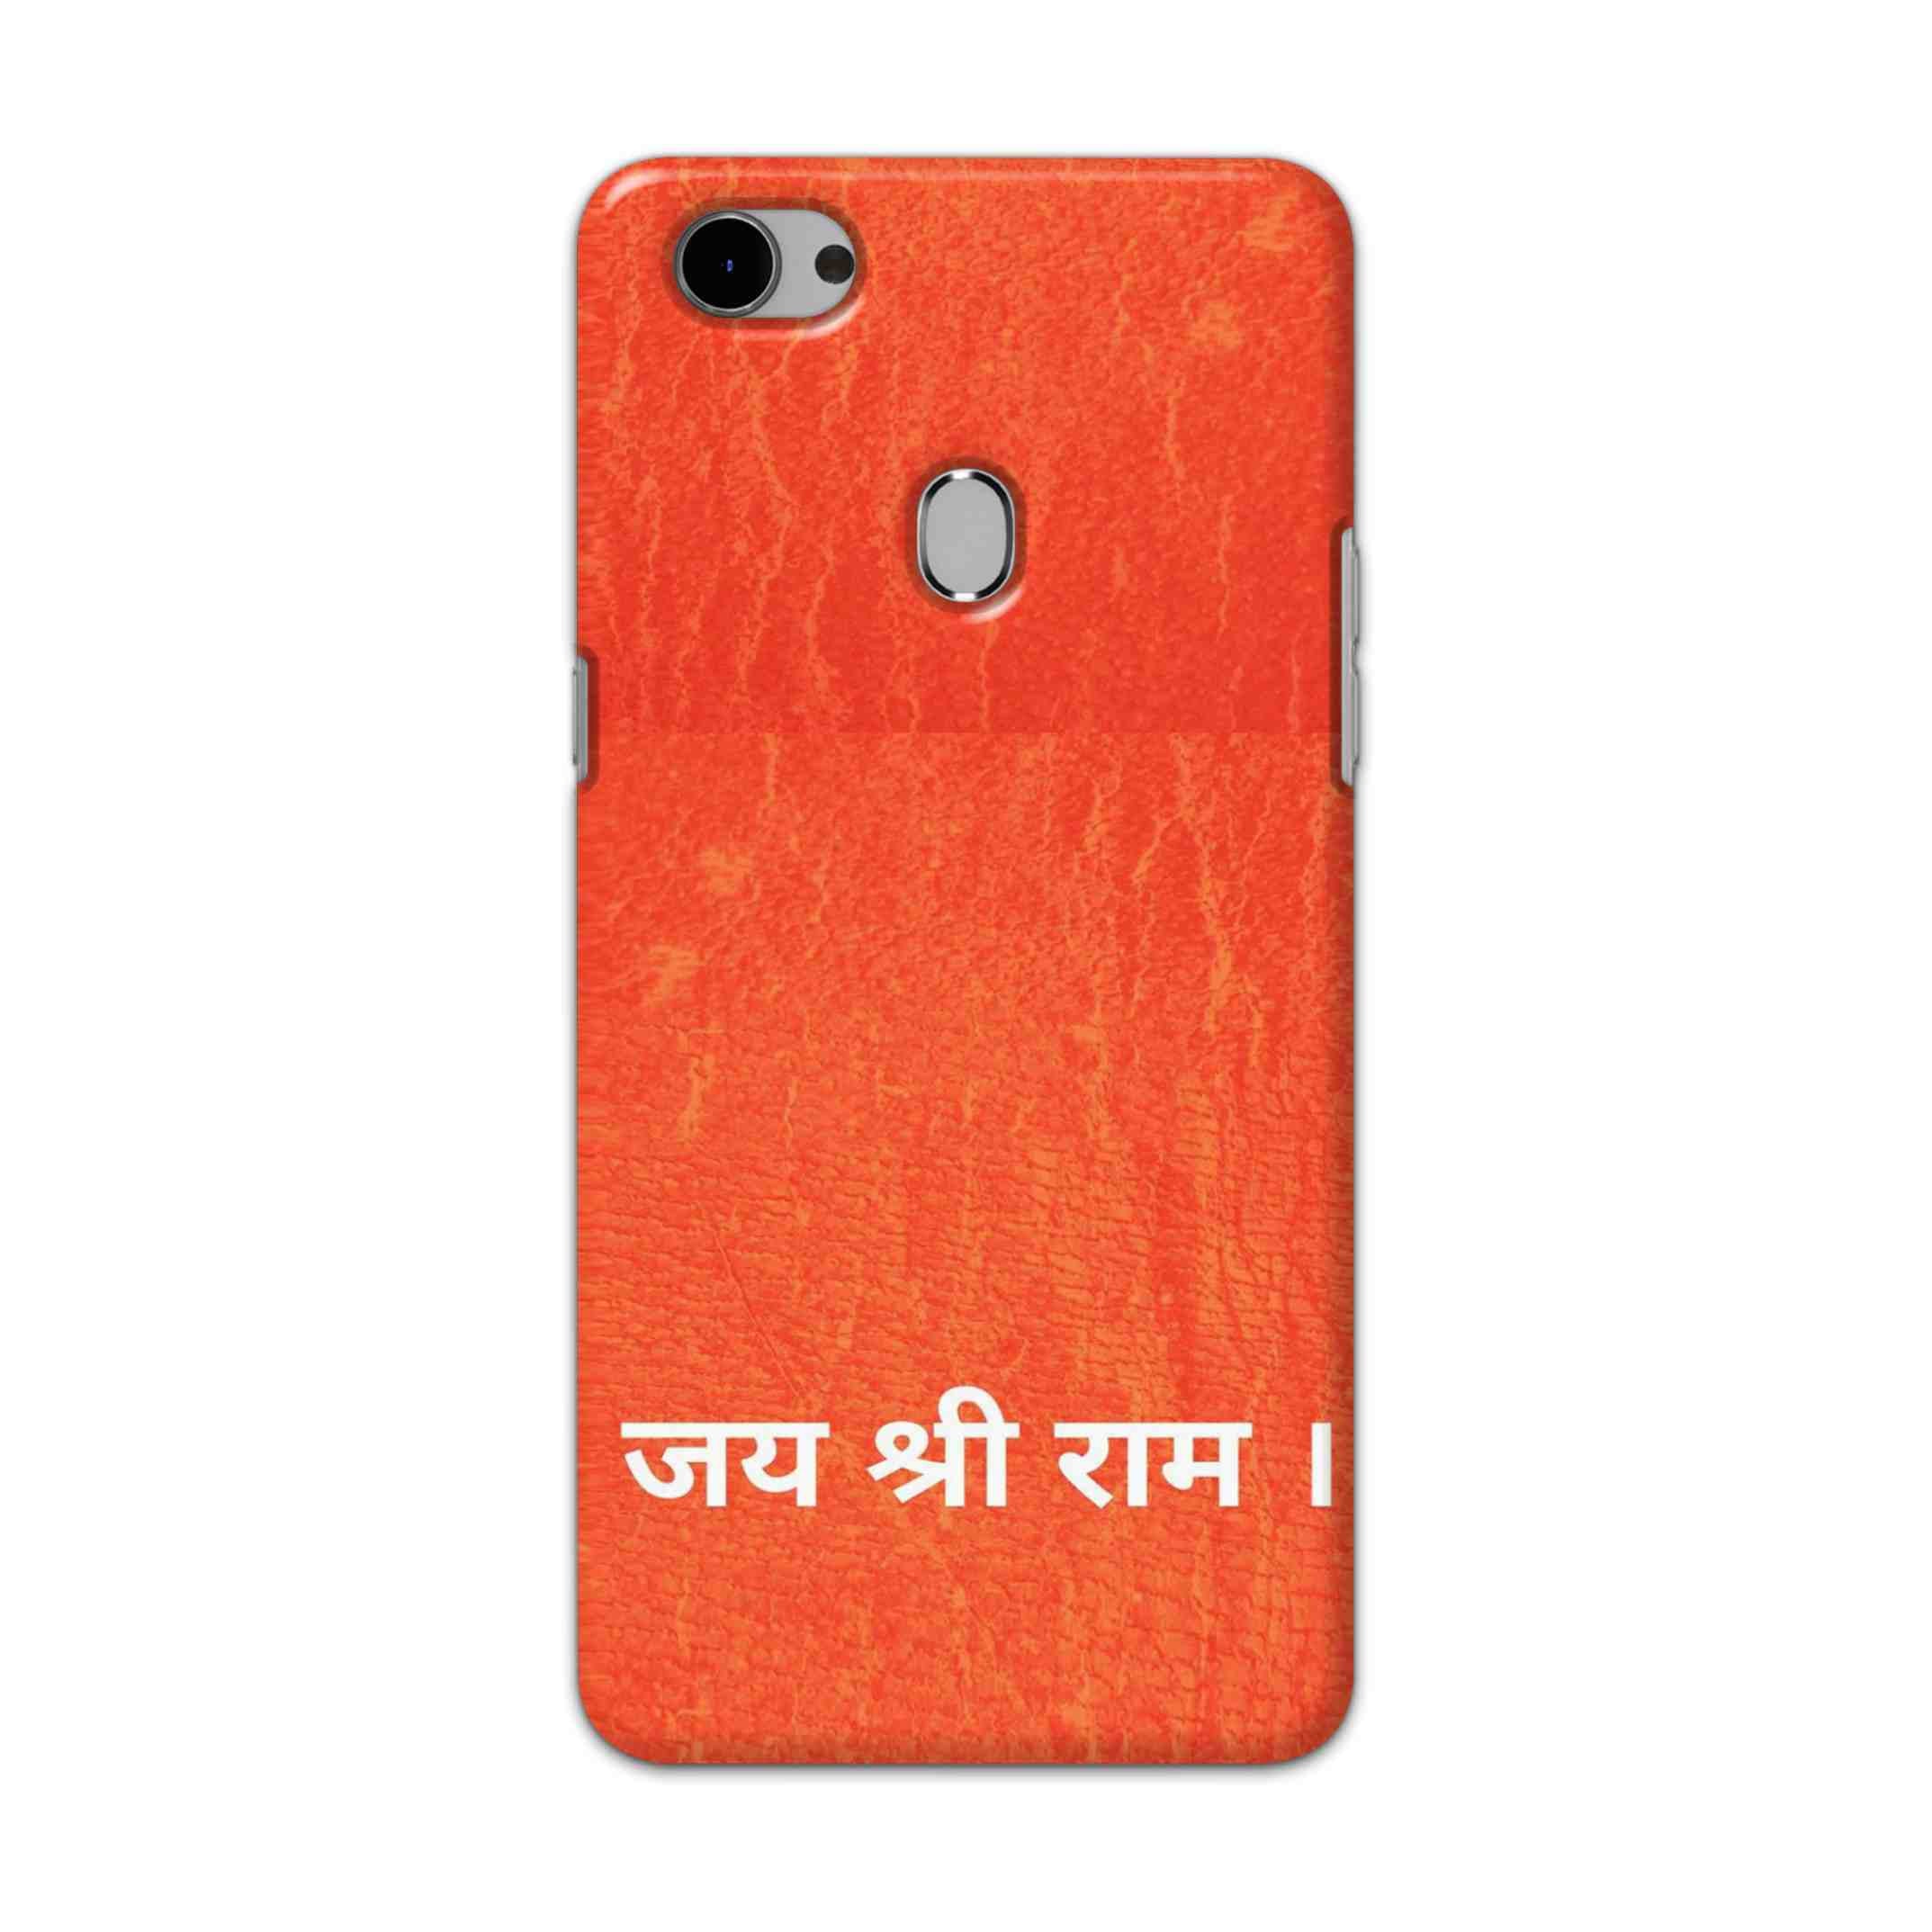 Buy Jai Shree Ram Hard Back Mobile Phone Case Cover For Oppo F7 Online